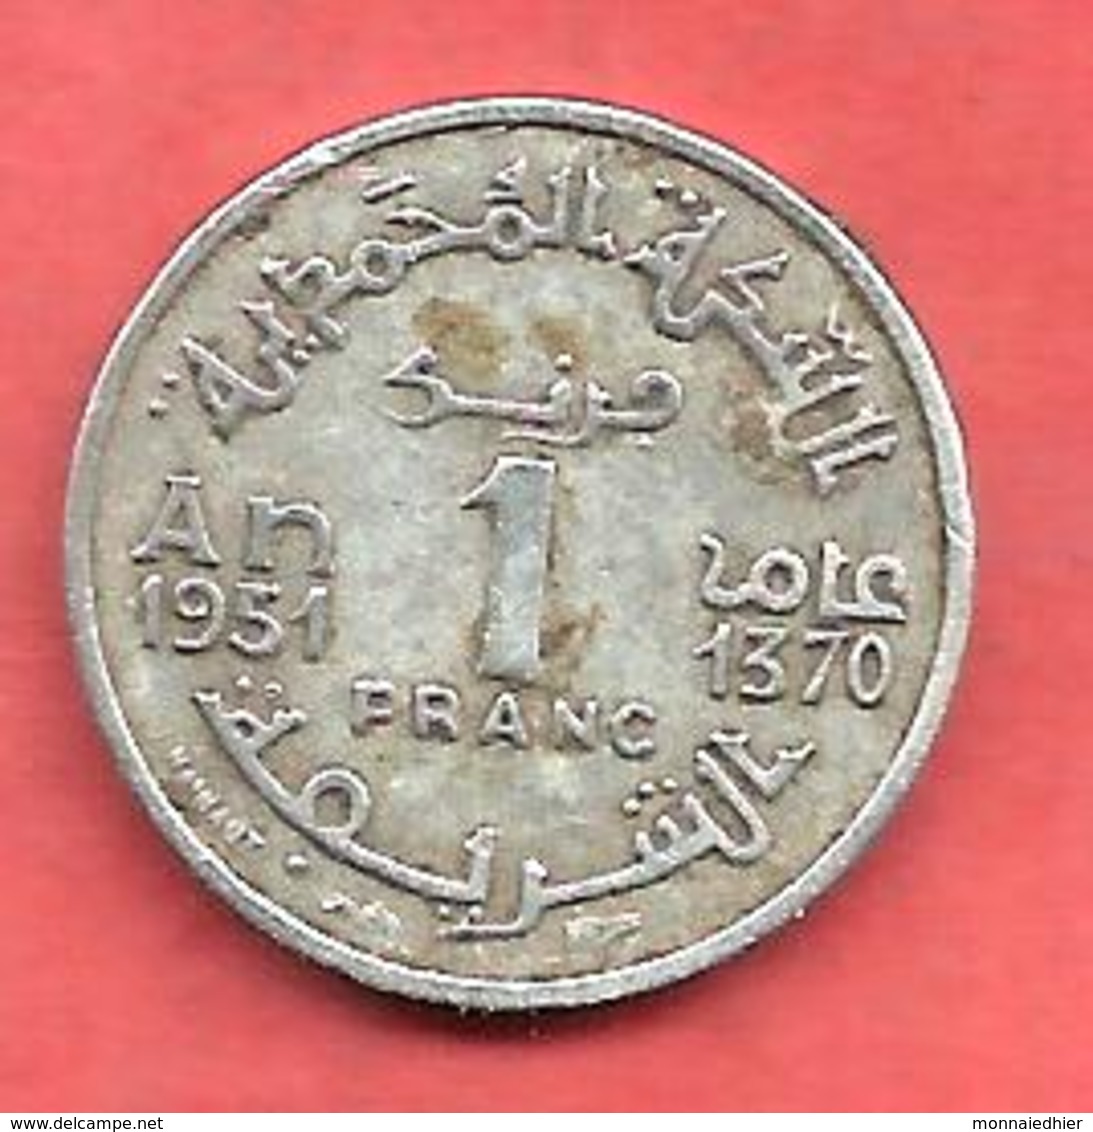 1 Franc , MAROC , Protectorat Français , Aluminium , AH 1370 , 1951 , N° Y # 46 - Maroc